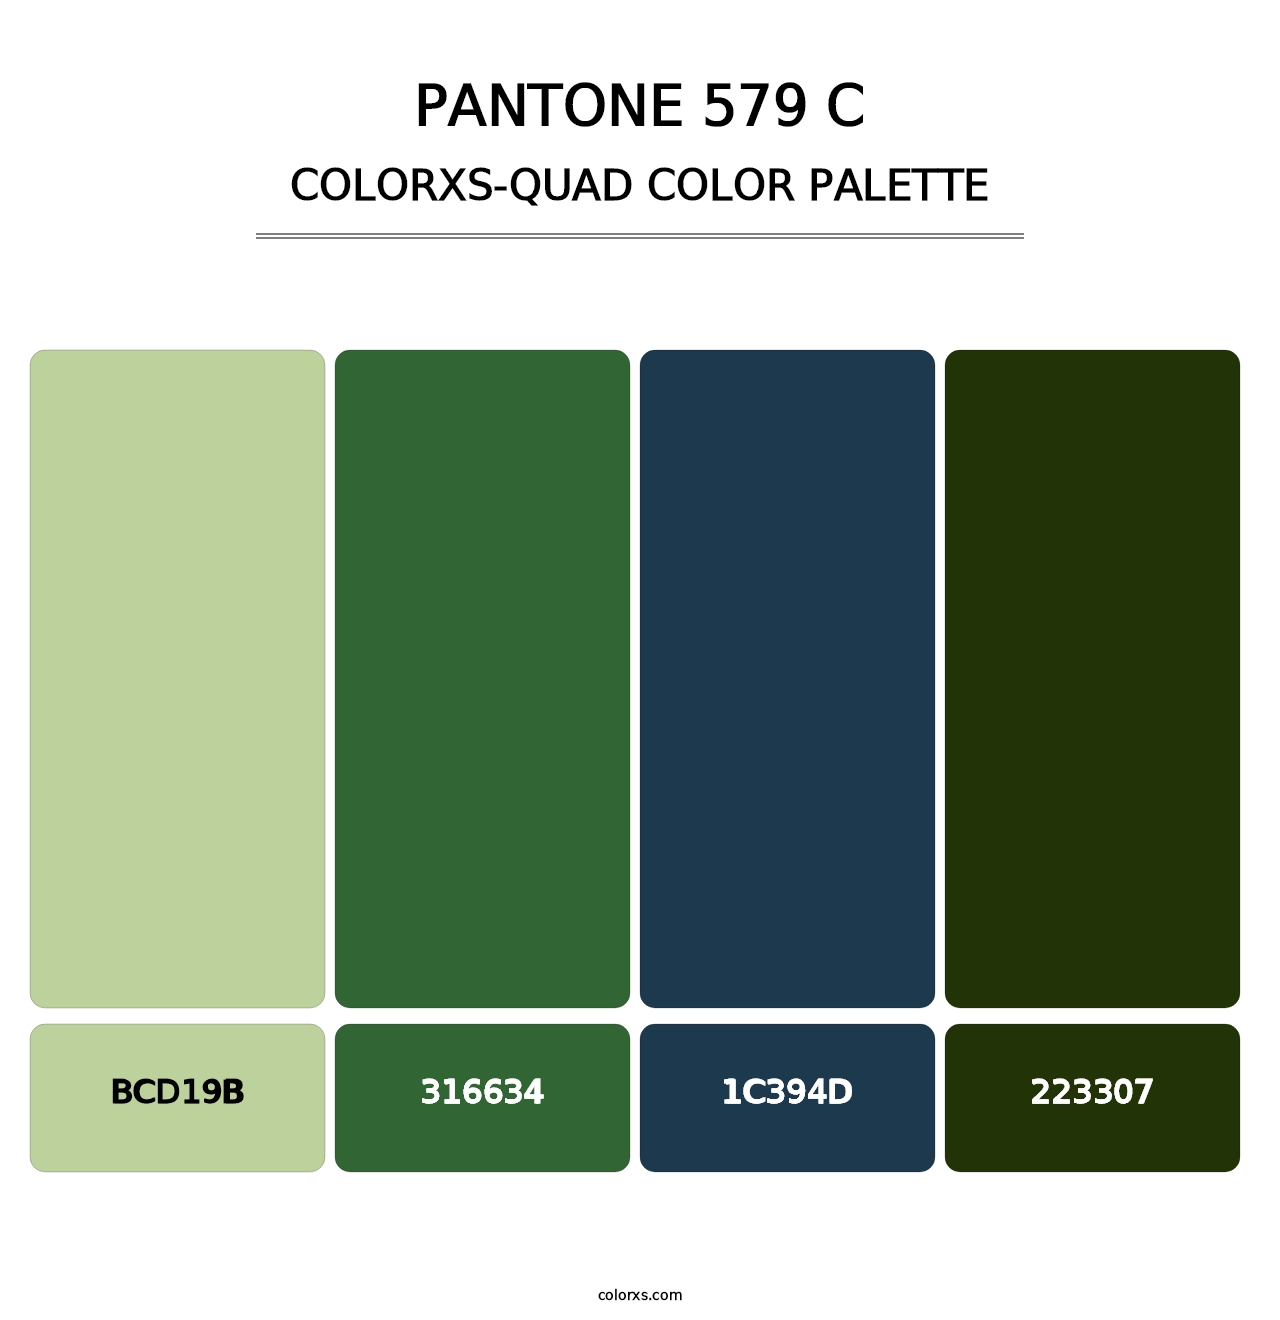 PANTONE 579 C - Colorxs Quad Palette